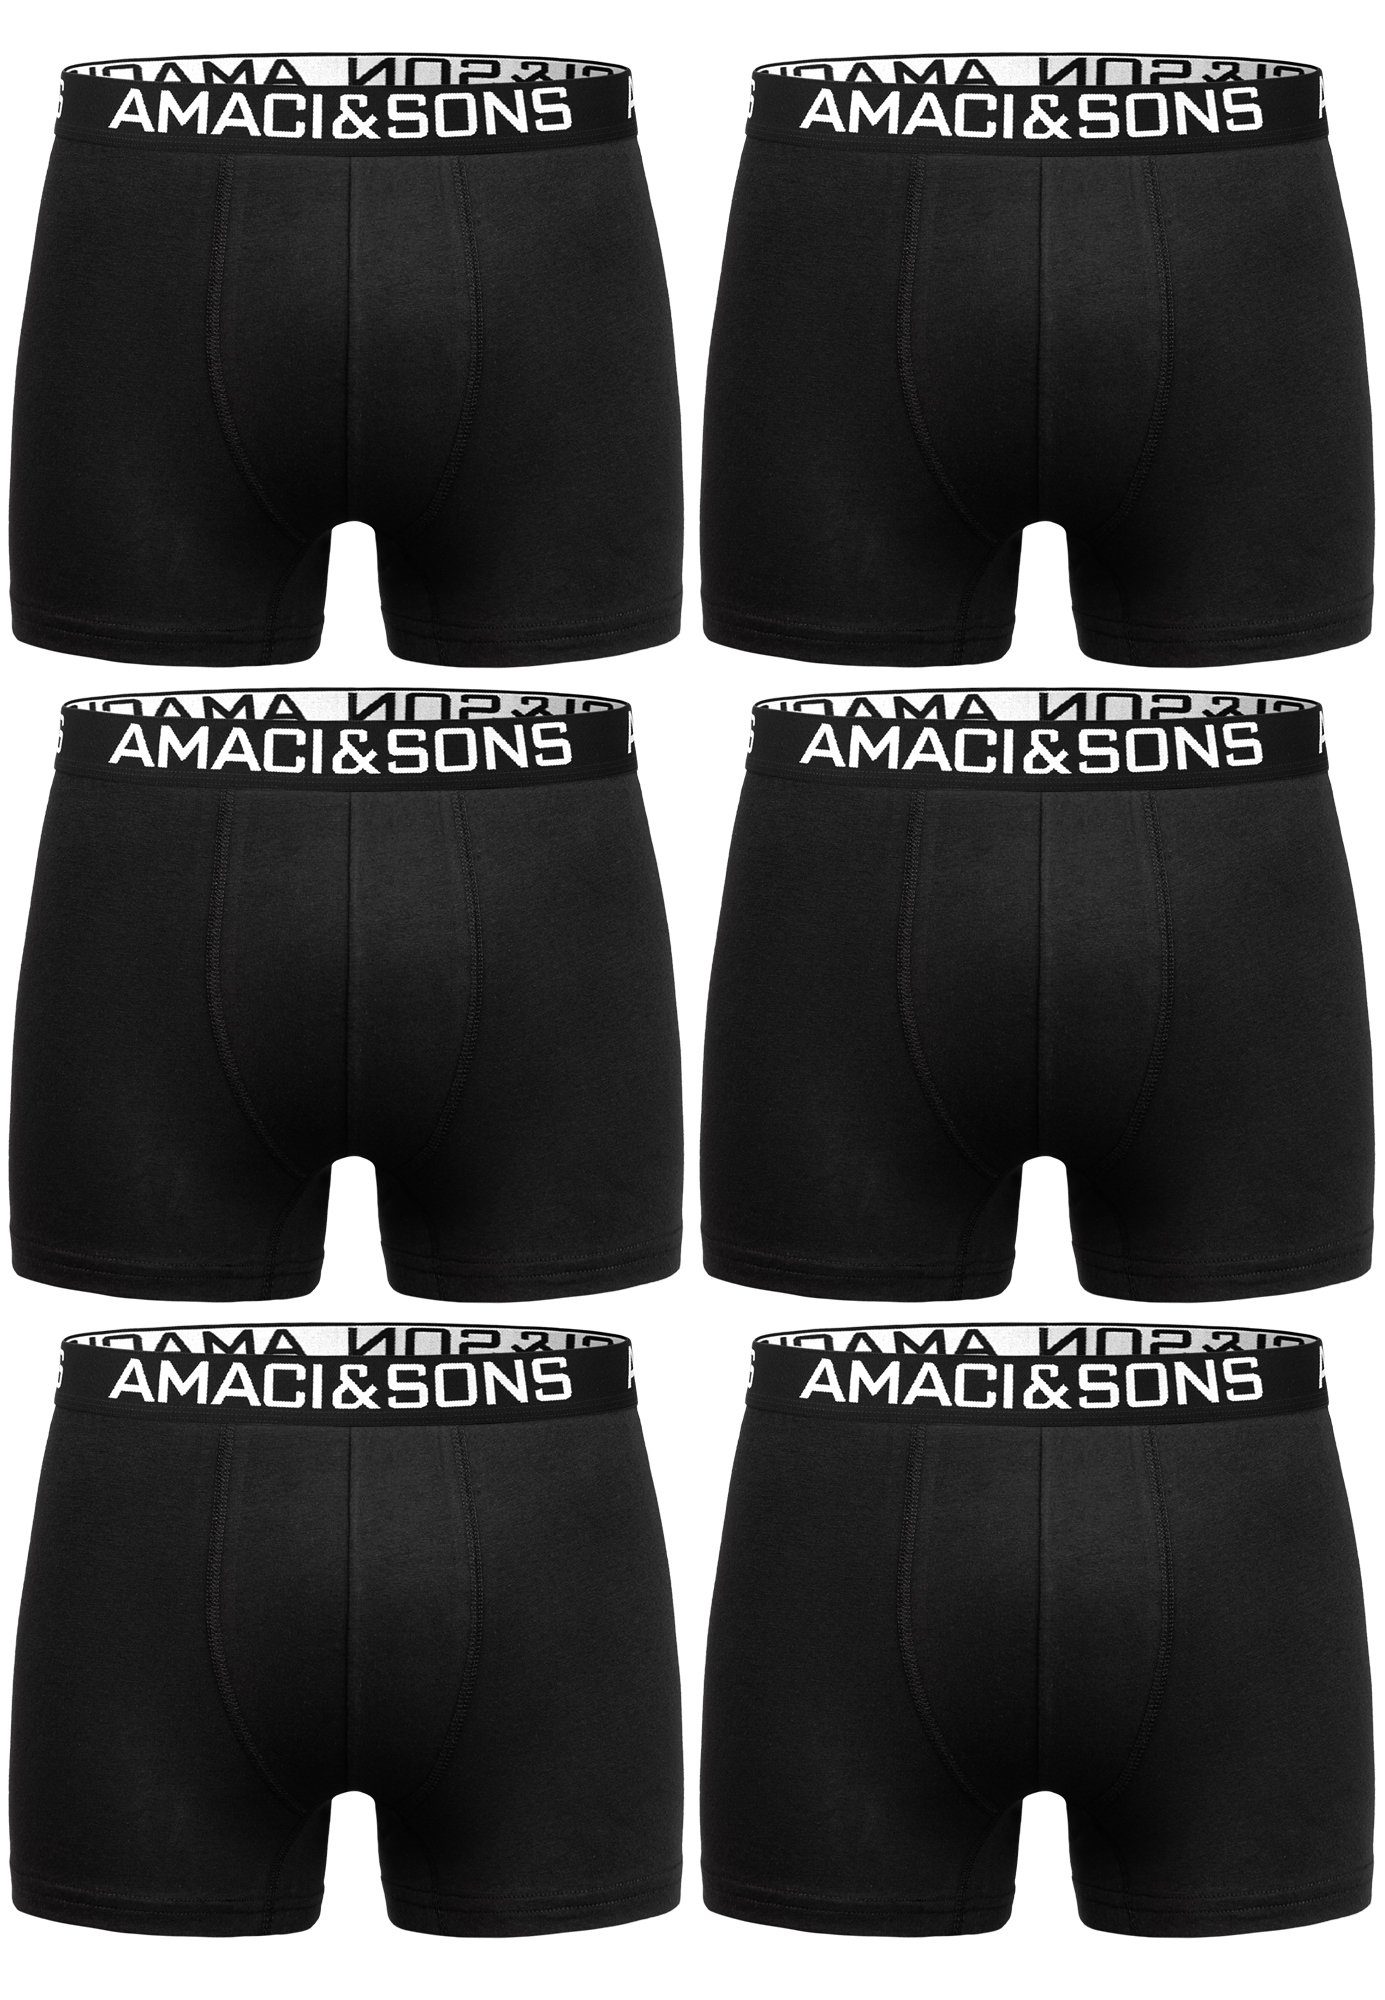 Amaci&Sons Boxershorts WESTON 6er Pack Boxershorts (6er-Pack) Herren Baumwolle Männer Unterhose Unterwäsche Schwarz/Schwarz